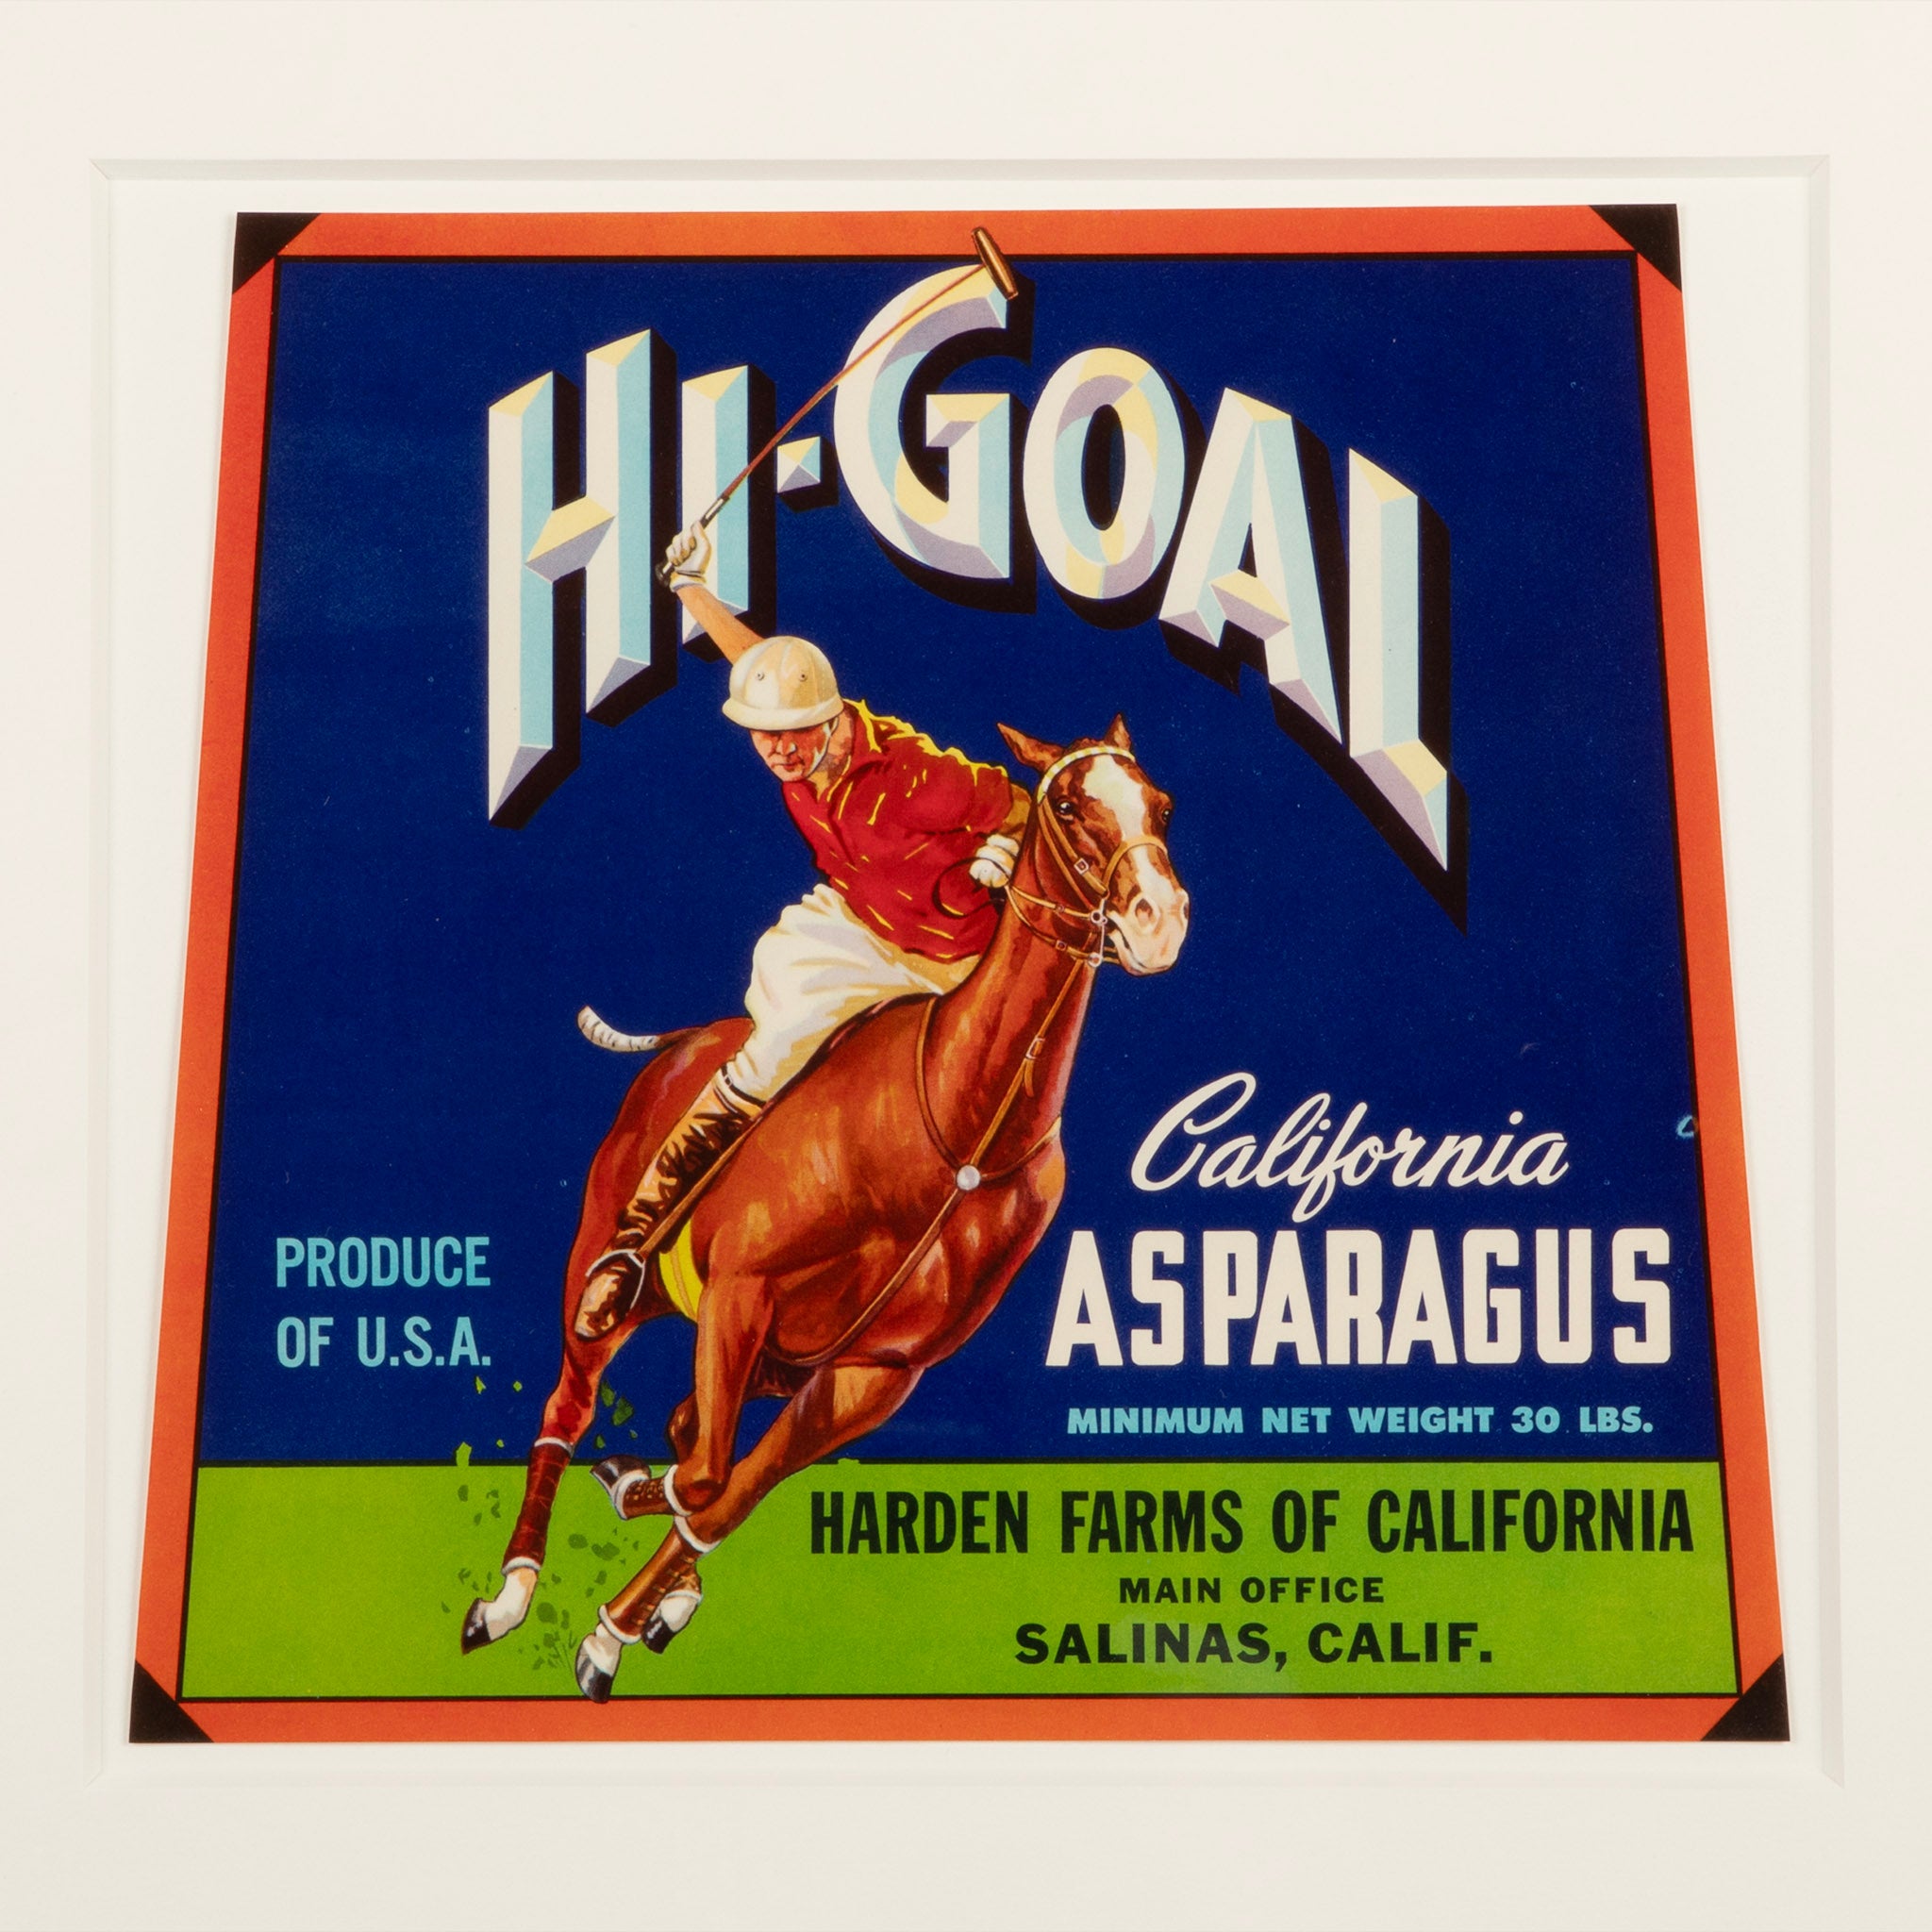 Original Hi-Goal Advertising Label